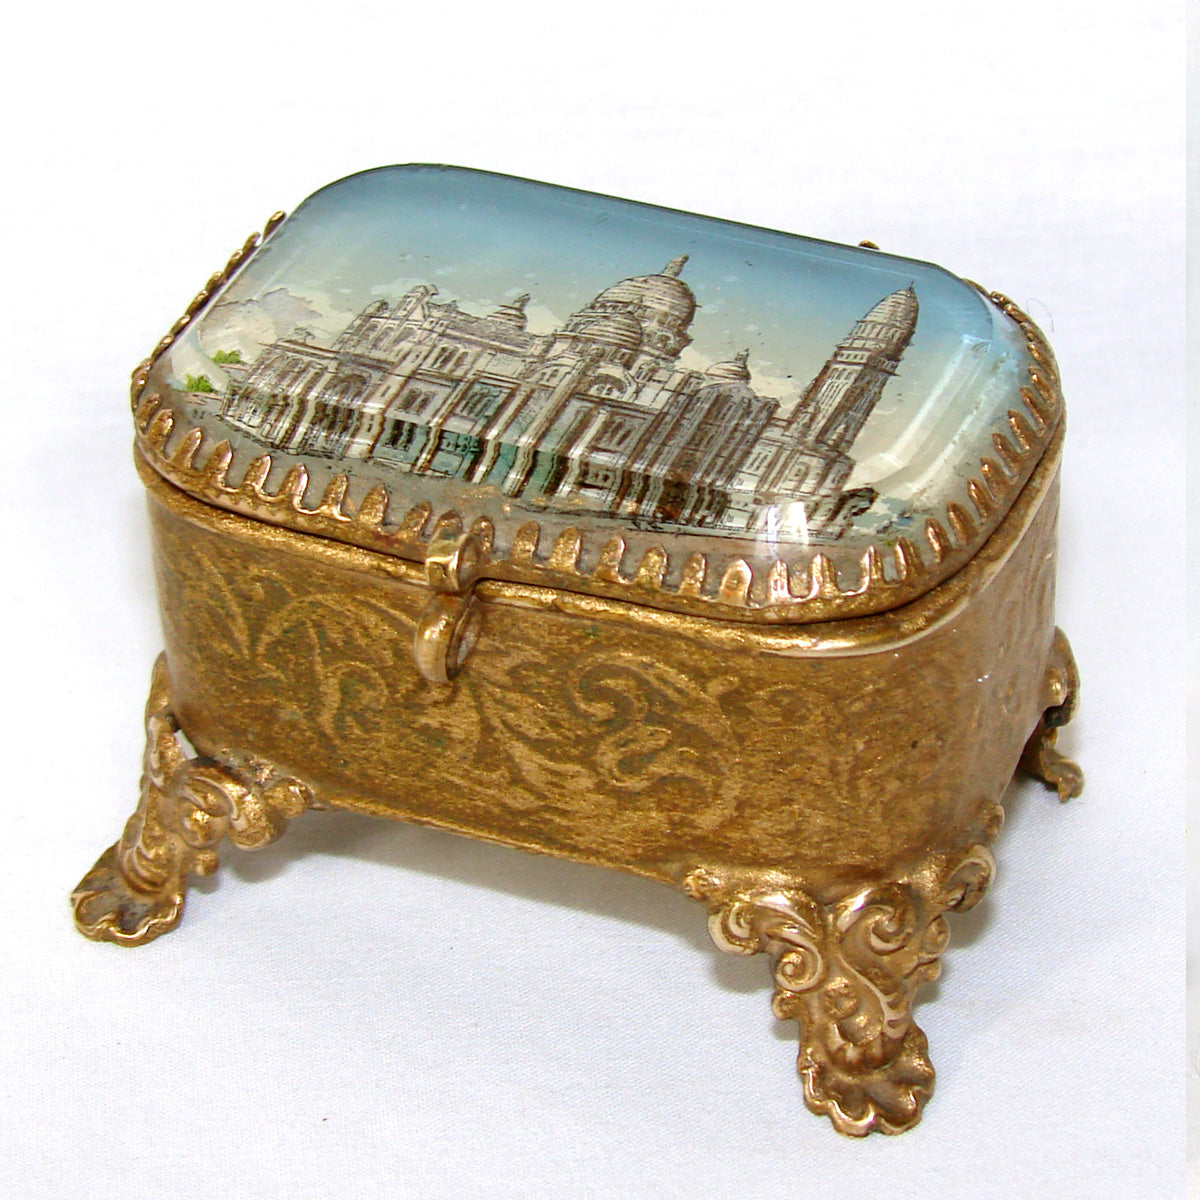 Antique French Eglomise Jewel Casket or Patch Box, a Souvenir of Sacre Coeur, Paris